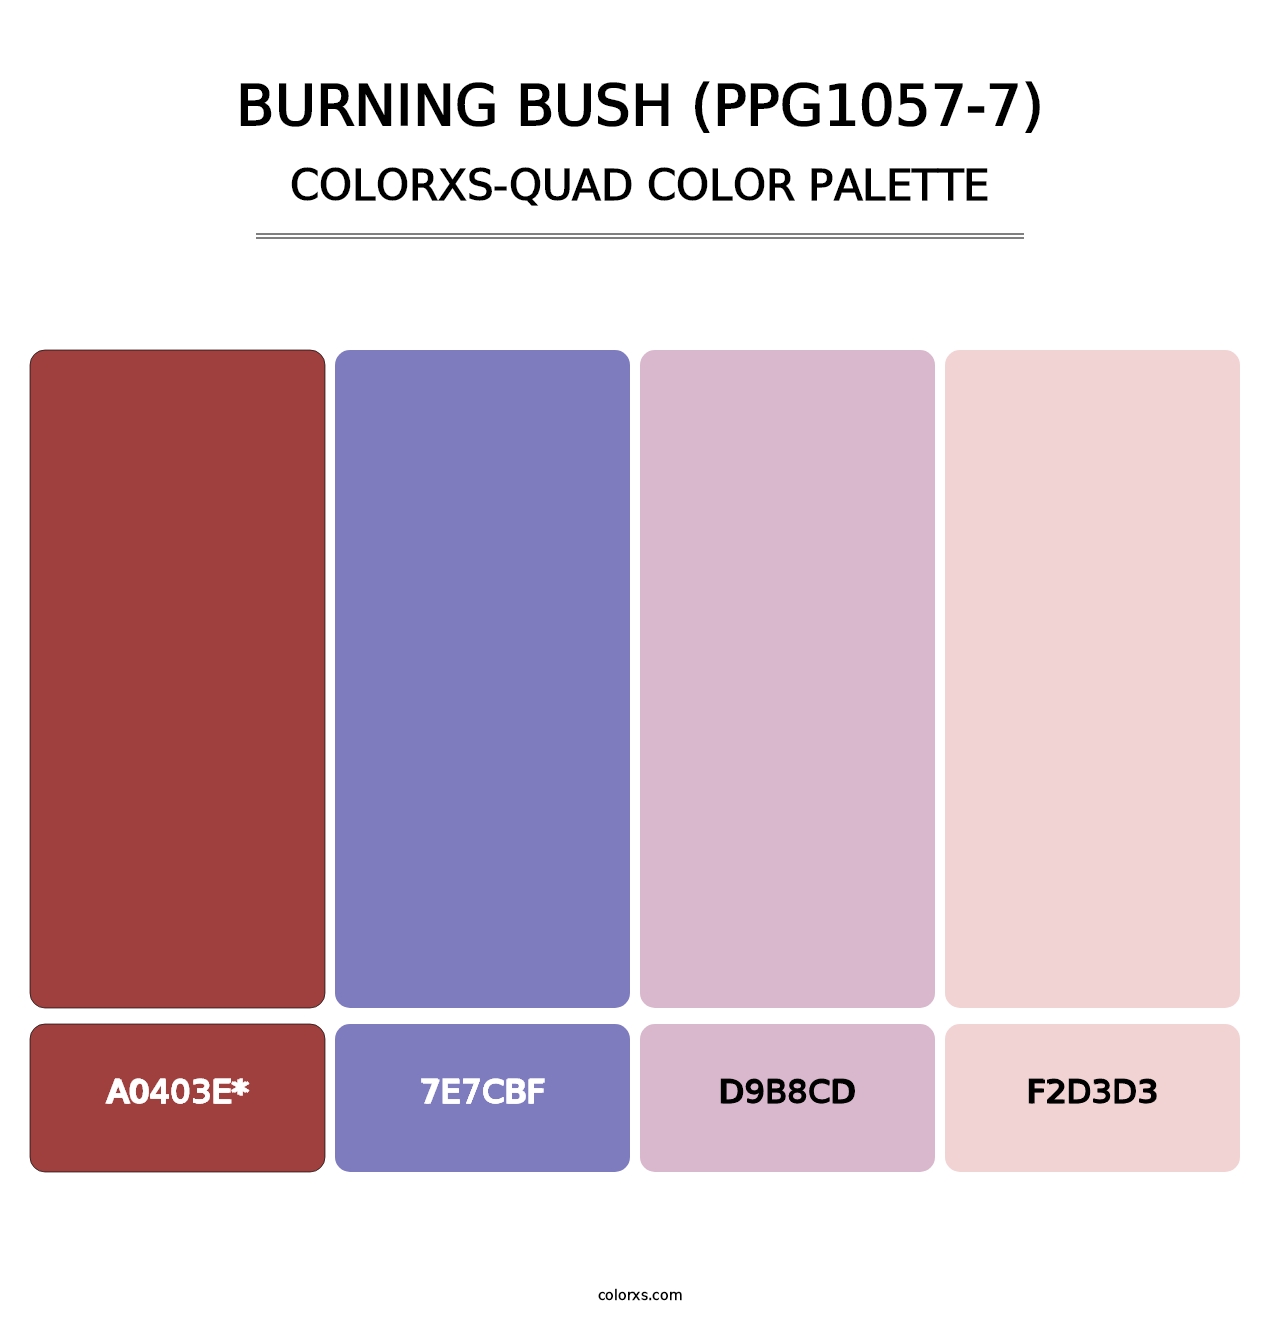 Burning Bush (PPG1057-7) - Colorxs Quad Palette